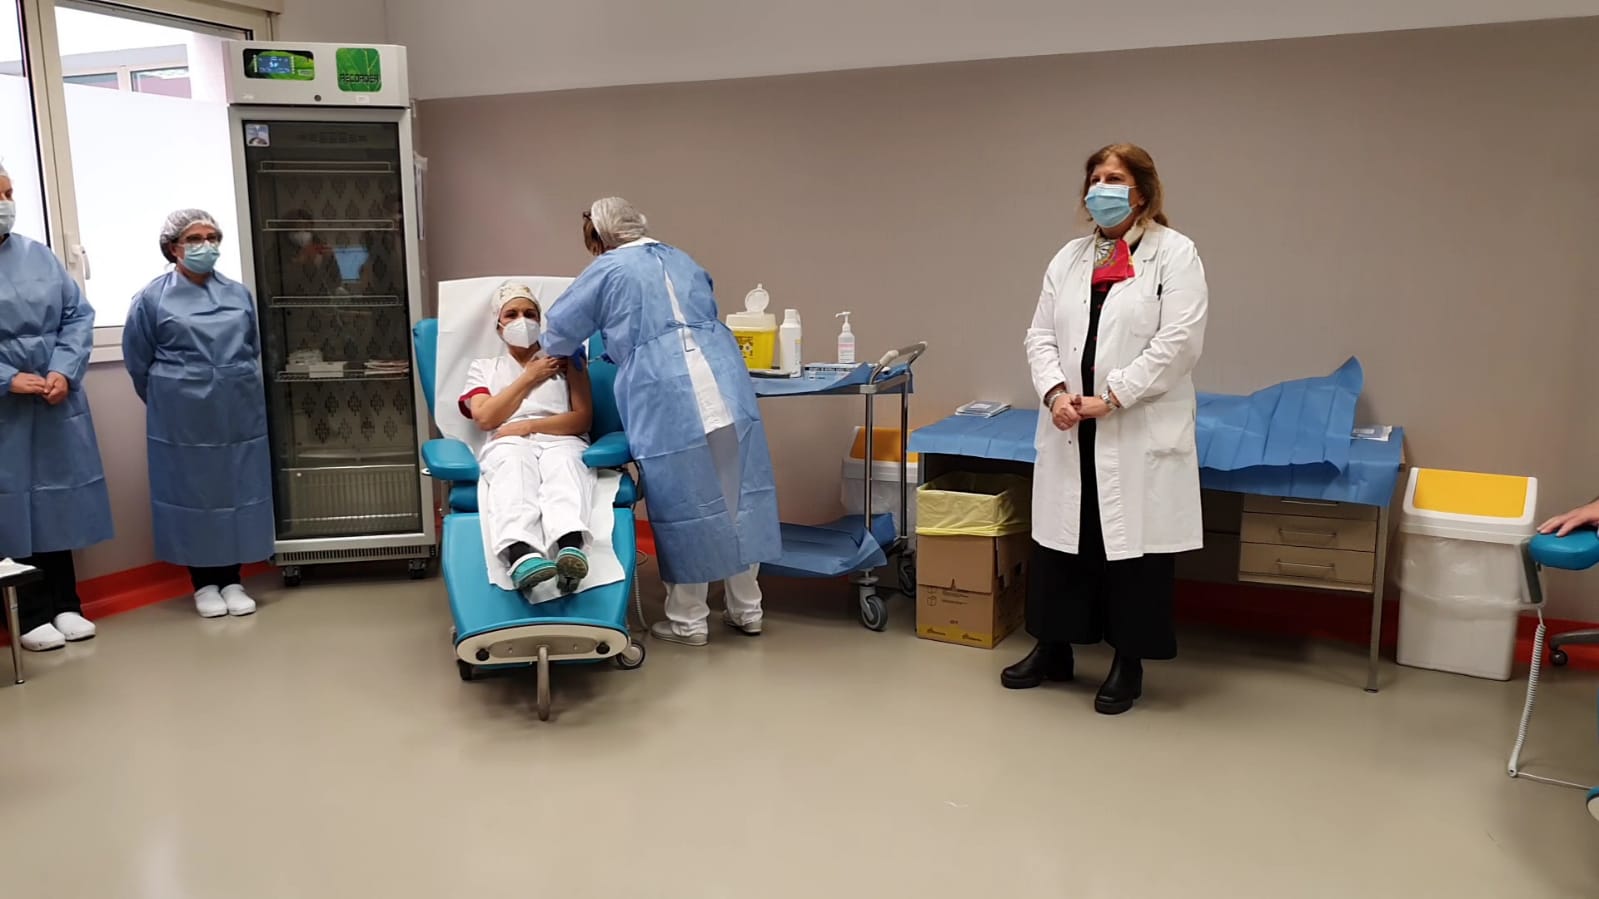 FOTO/VIDEO - COVID, iniziata la vaccinazione al Noc. Un'infermiera, Daniela  Delicati, è stata la prima